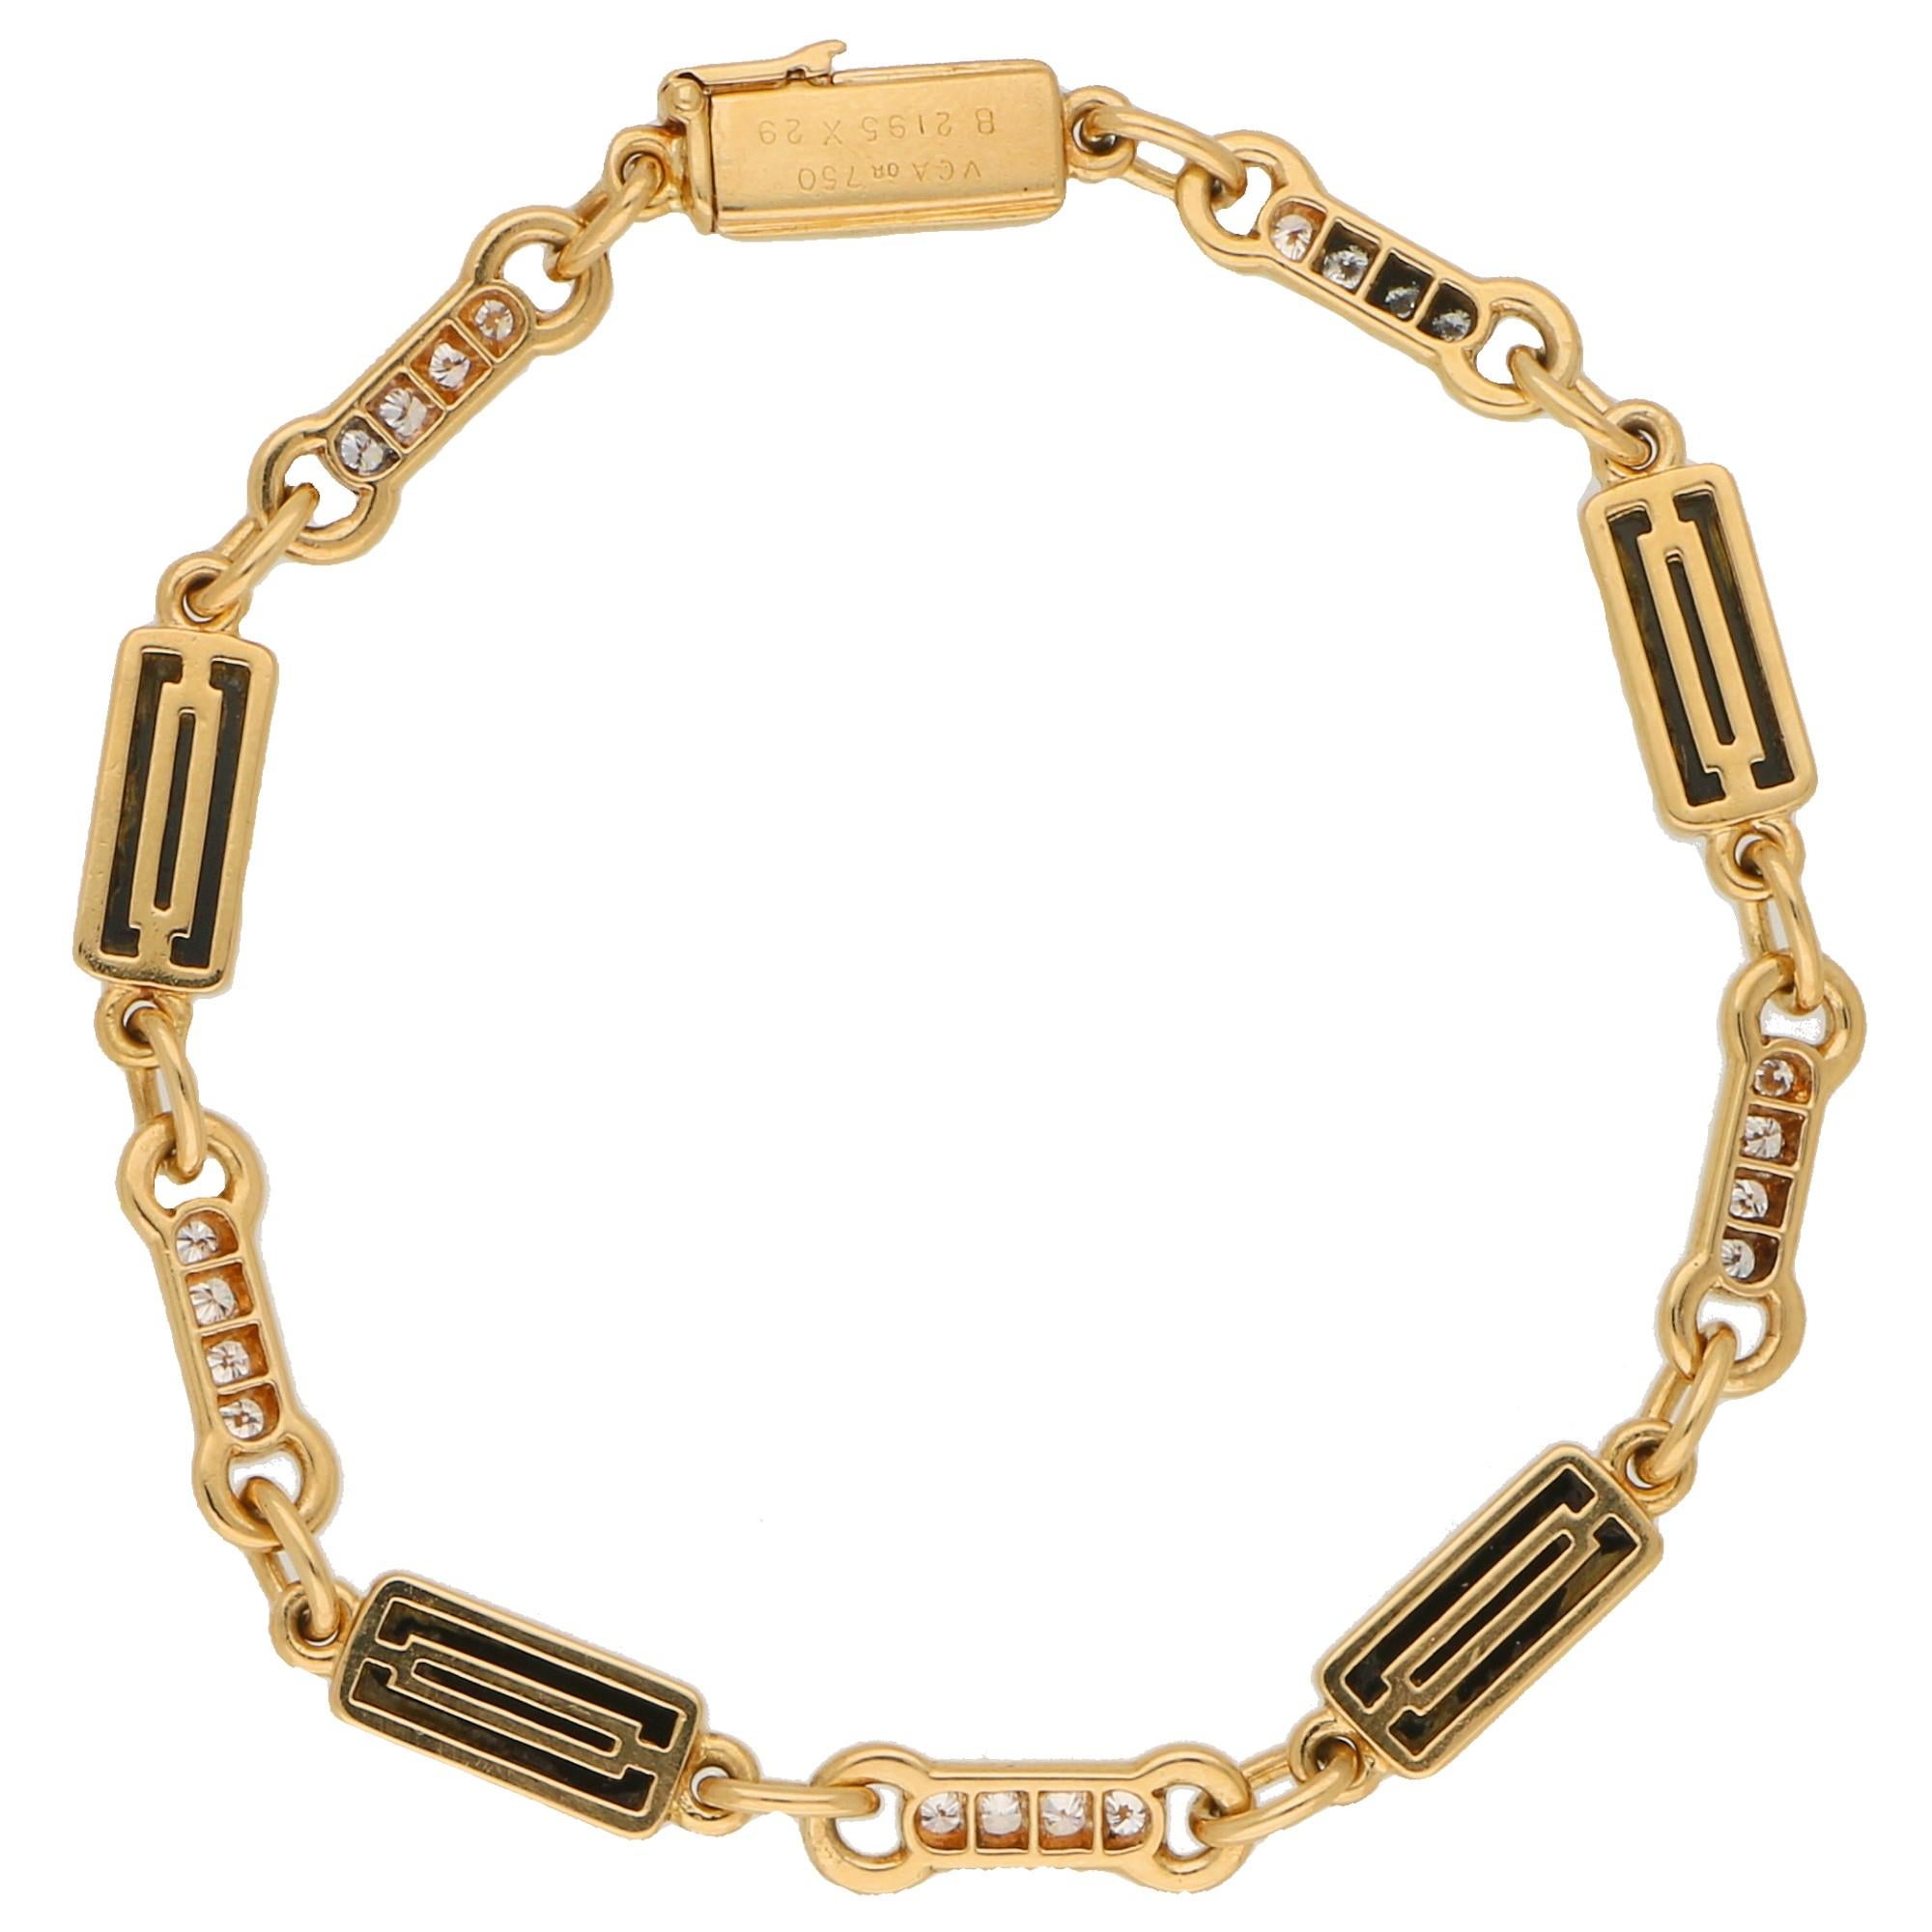  Ravissant bracelet à maillons en onyx et diamants Van Cleef and Arpels, en or jaune 18 carats.

Le bracelet est composé de dix panneaux de forme rectangulaire, dont cinq sont sertis d'une pièce unique d'onyx. Les autres panneaux sont chacun sertis